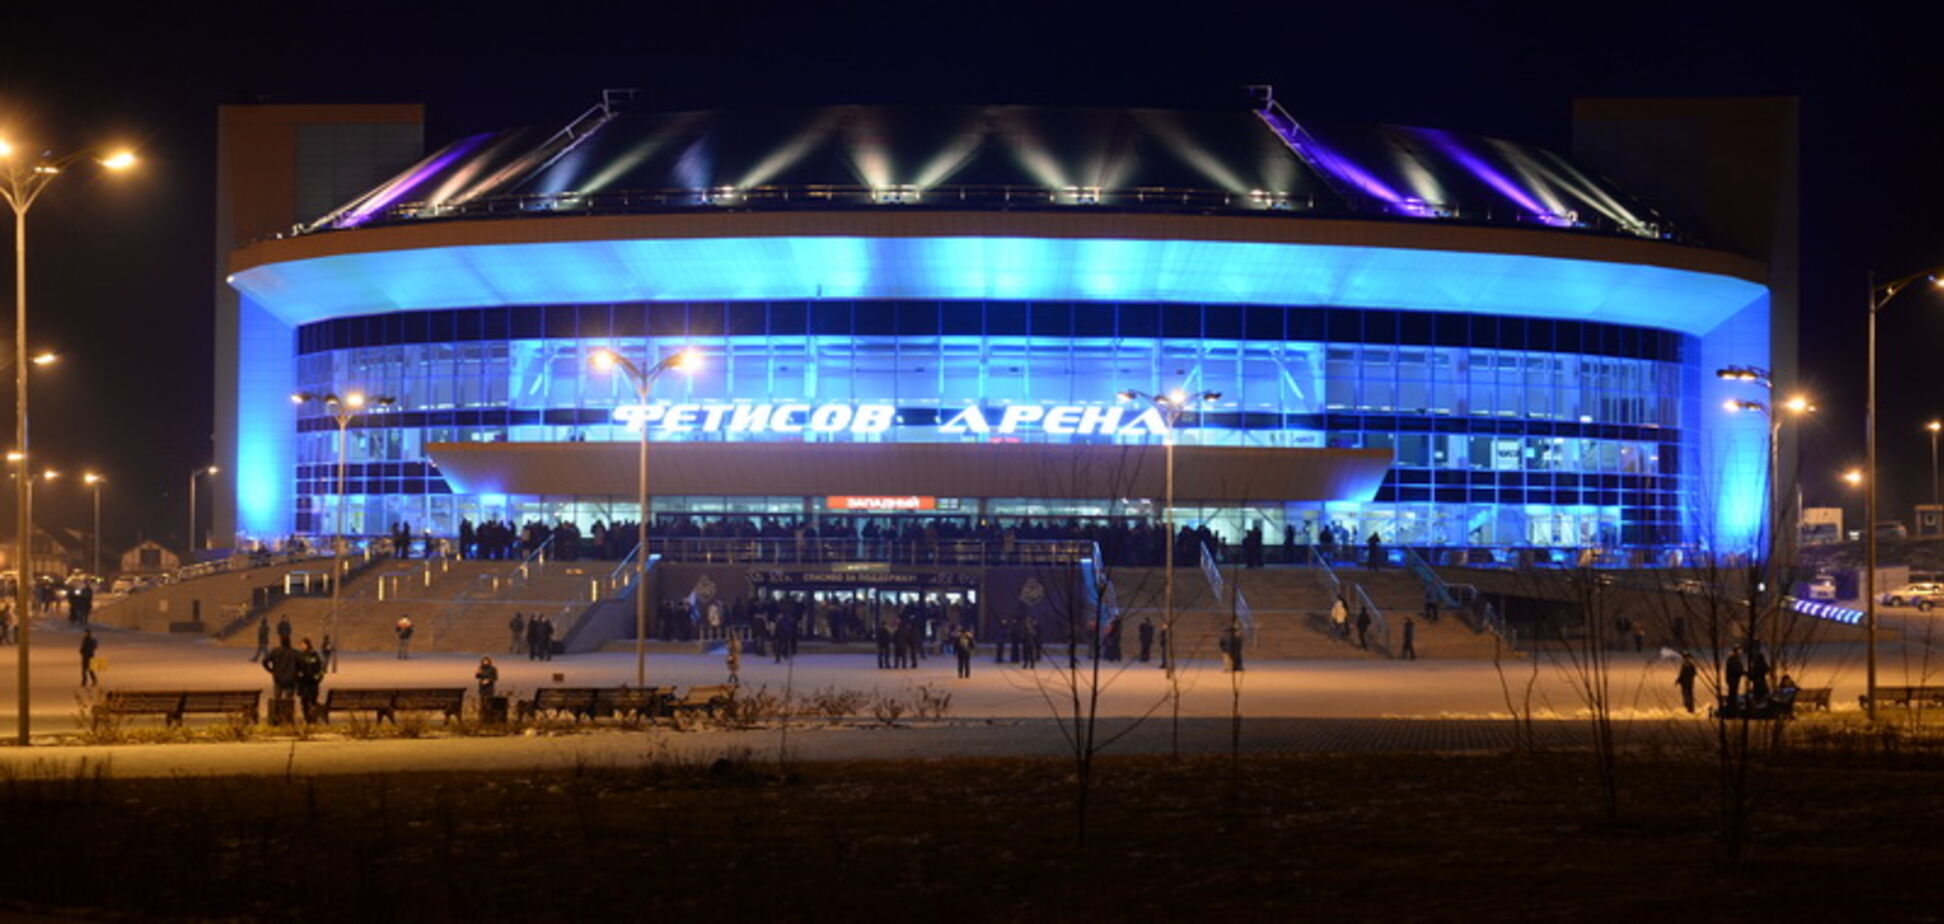 В России загорелась ледовая арена во время матча: появилось видео пожара